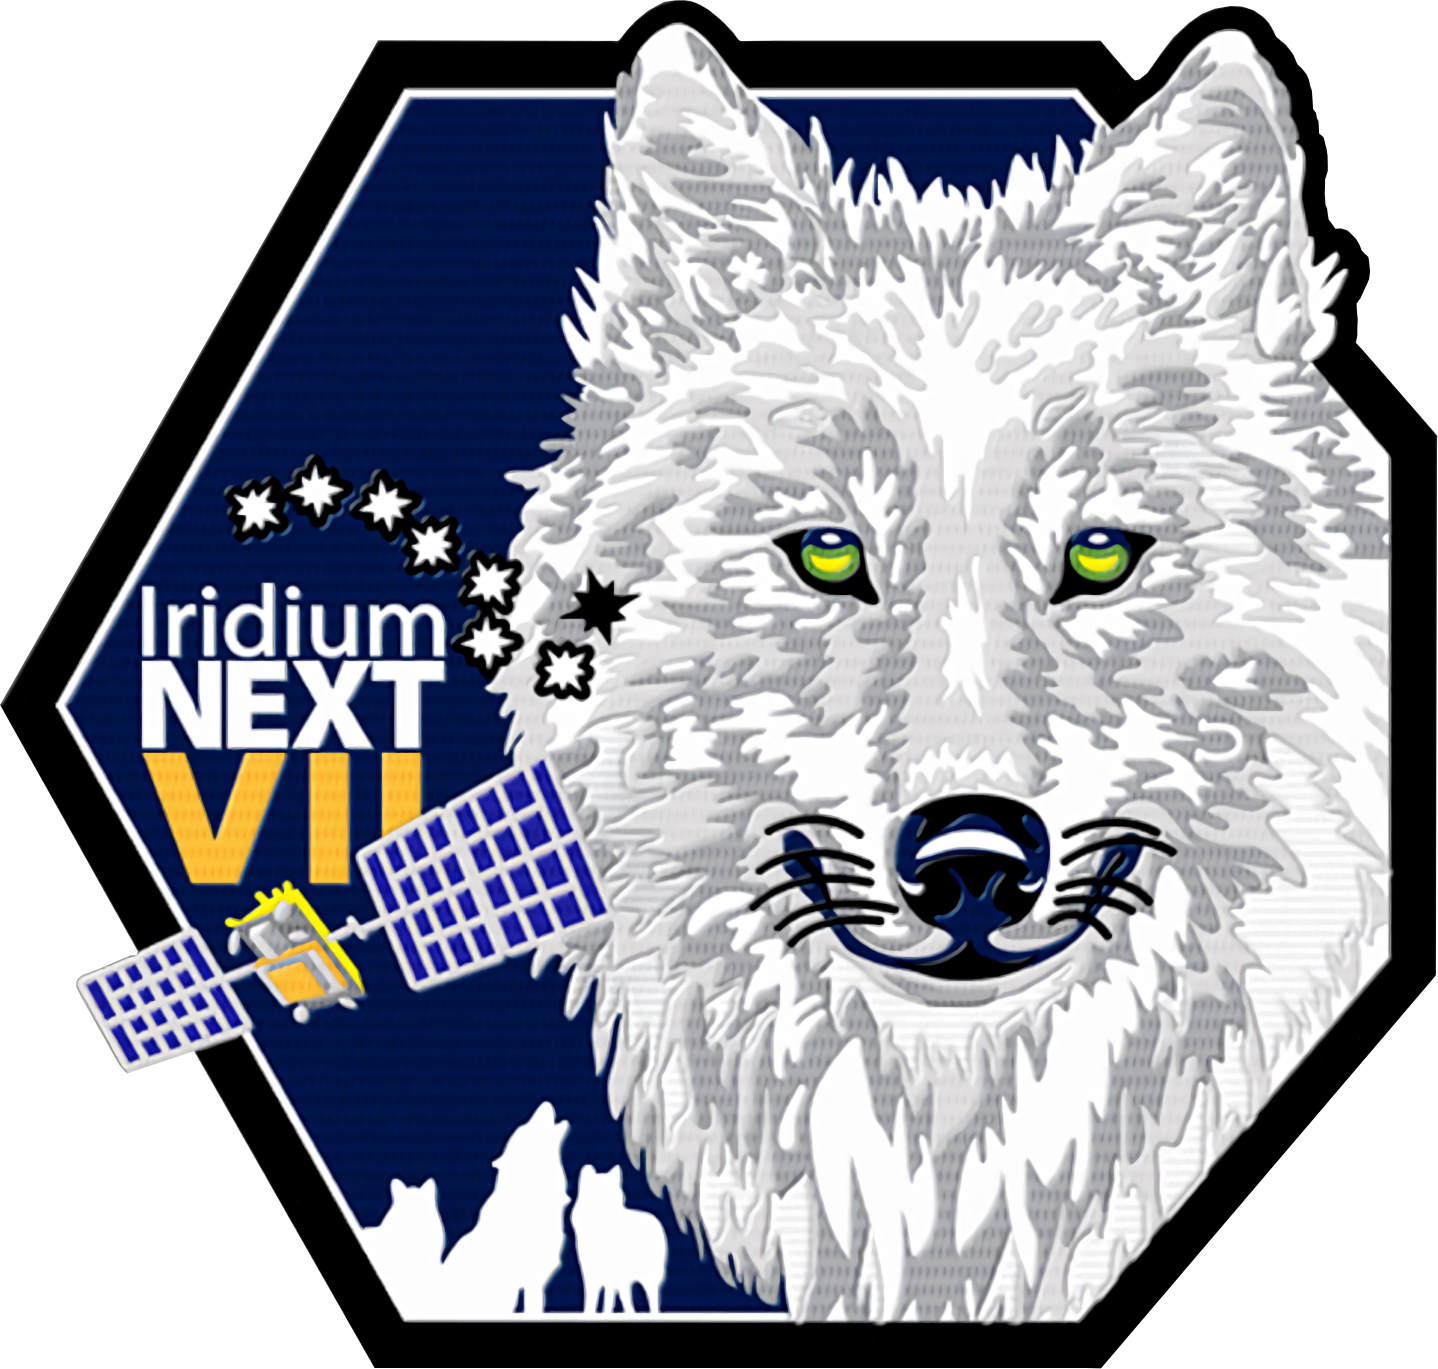 Naszywka misji Iridium-7 przygotowana przez firmę Iridium